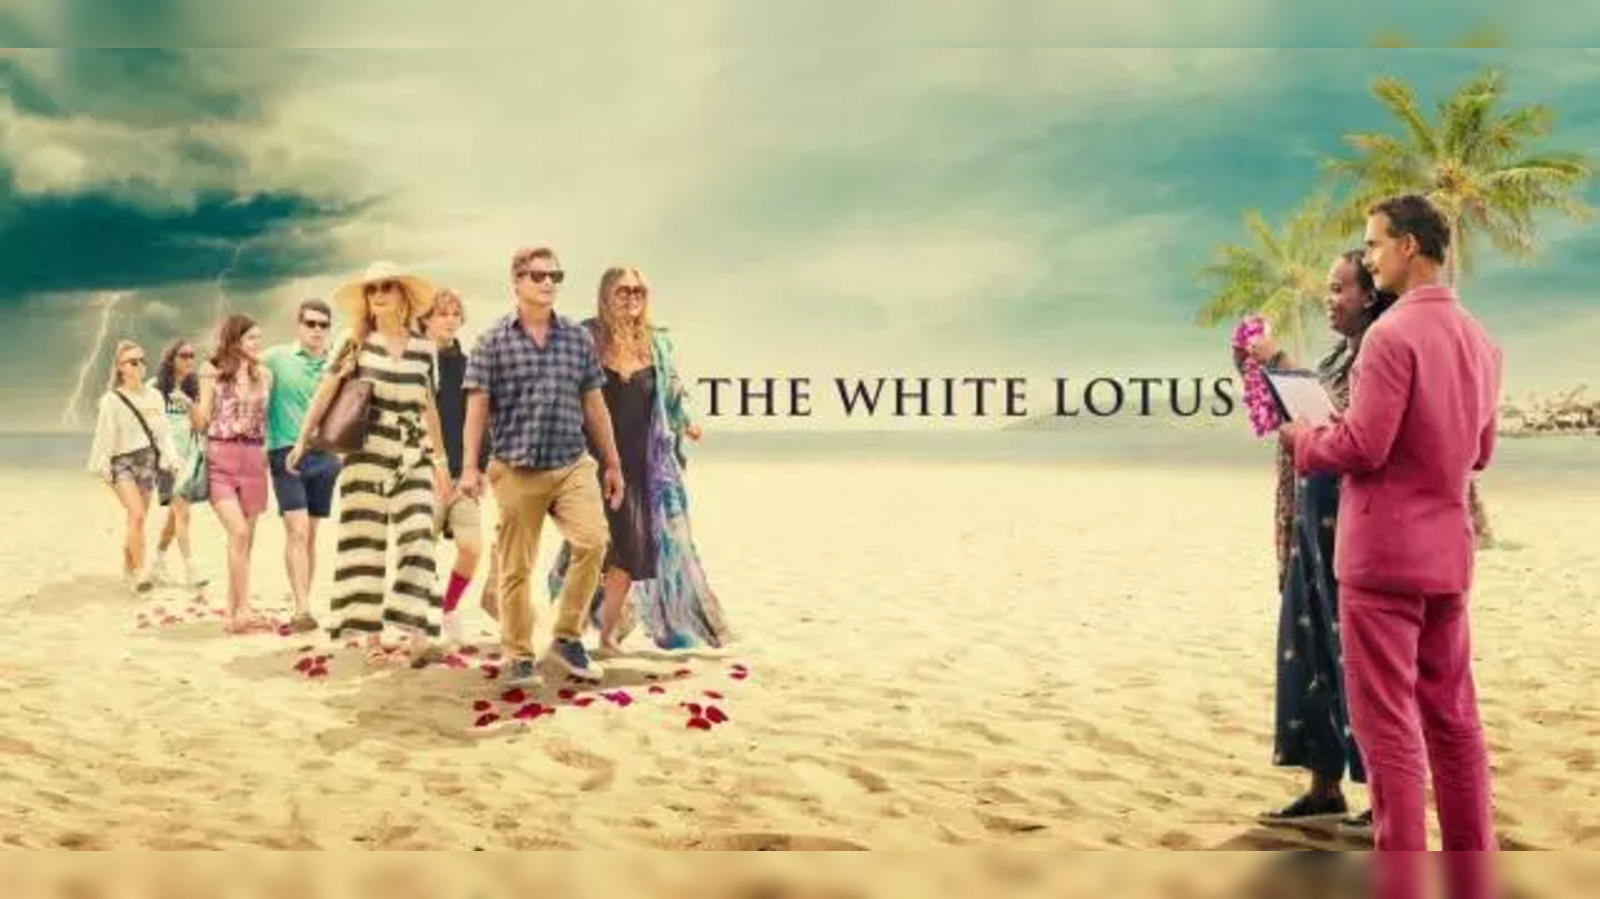 The White Lotus Season 2 episode 3 air time and plot